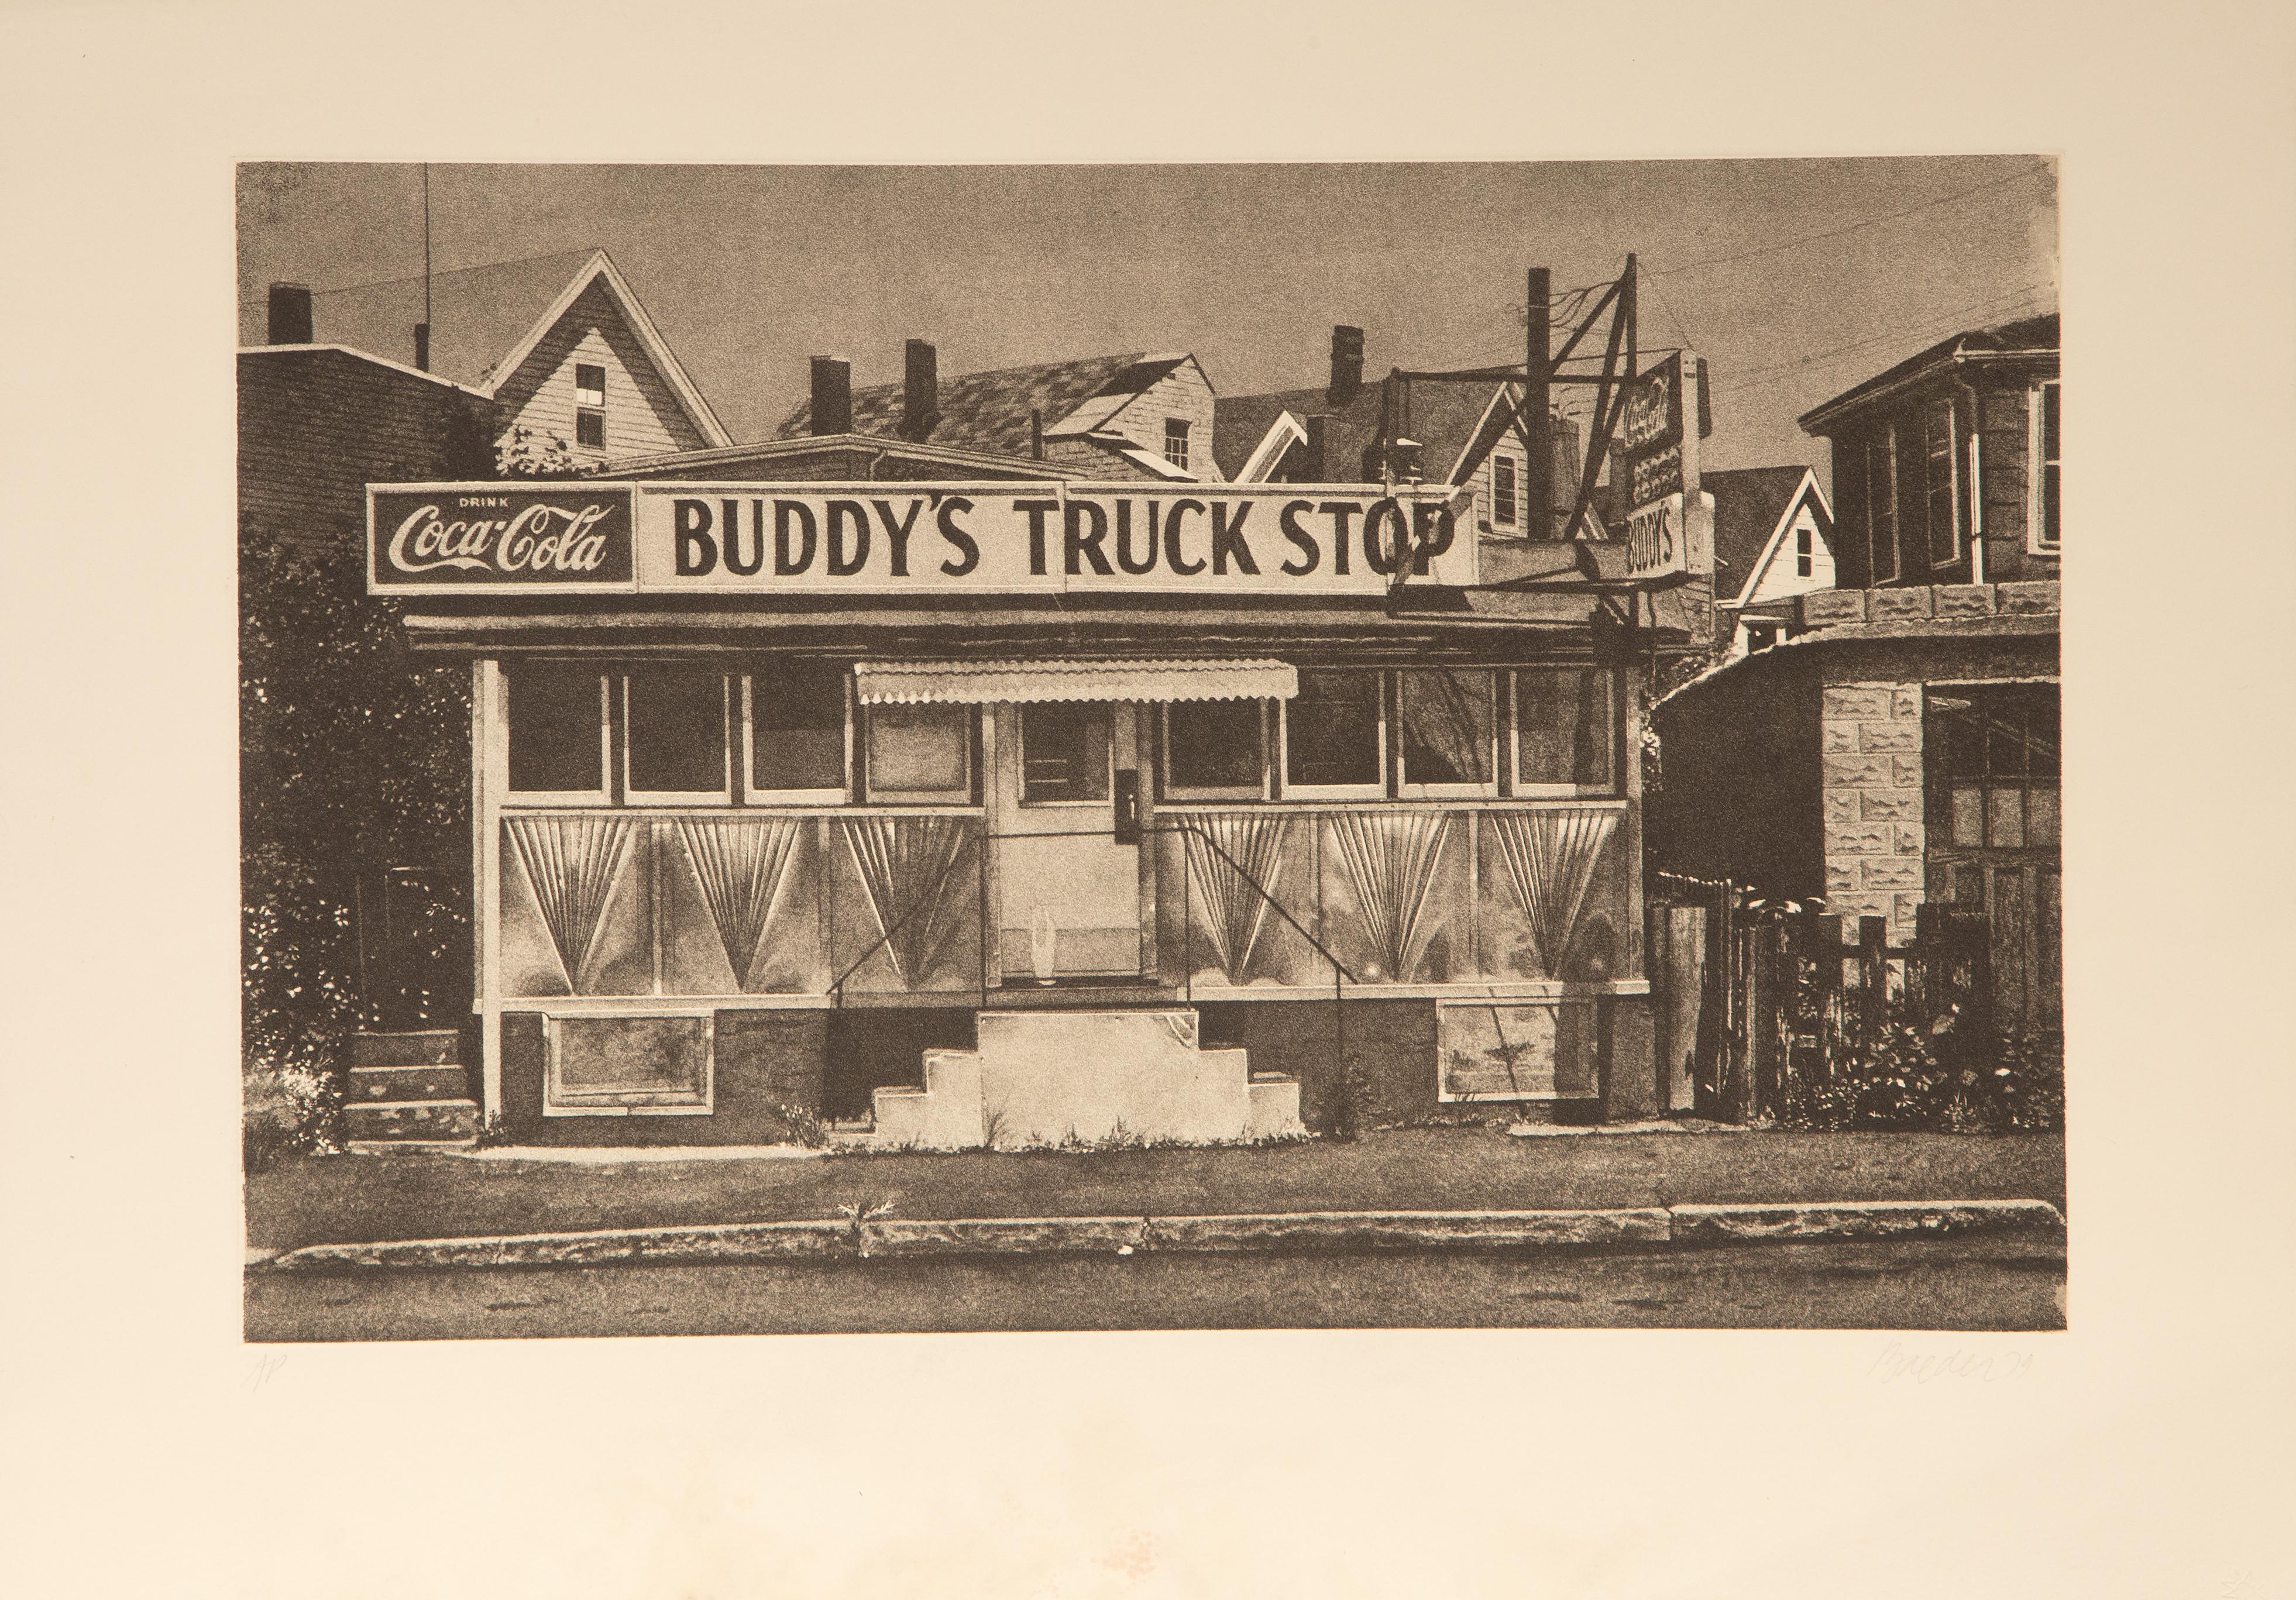 Buddy's Truck Stop
John Baeder, Américain (1938)
Date : 1979
Gravure sur Arches, signée, numérotée et datée au crayon
Édition d'AP
Taille de l'image : 15.25 x 23.75 pouces
Taille : 21 x 30 in. (53.34 x 76.2 cm)